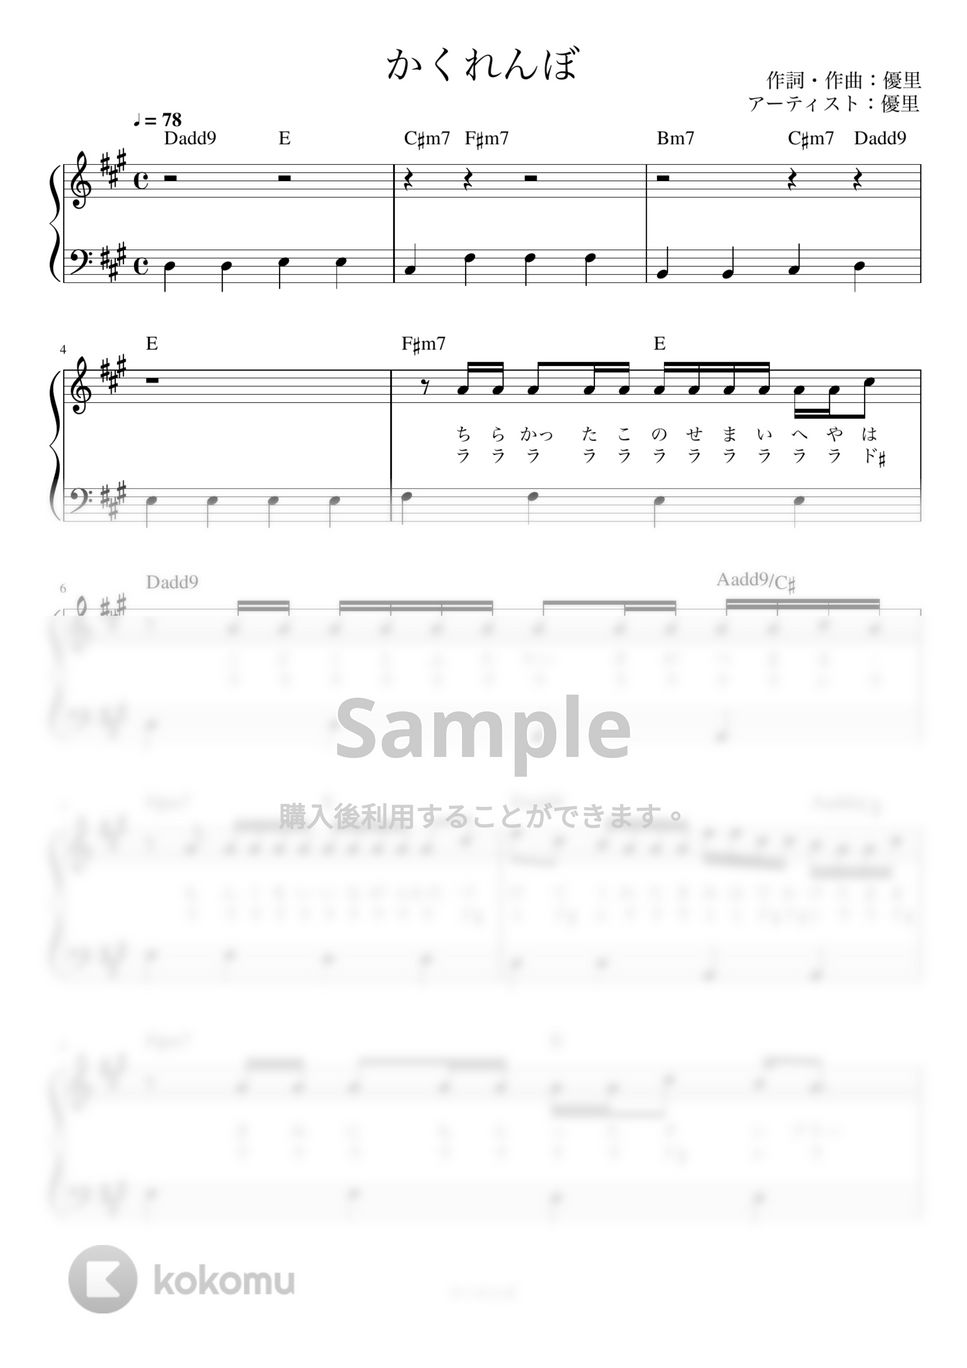 優里 - かくれんぼ (かんたん /  歌詞付き / ドレミ付き /  初心者) by piano.tokyo